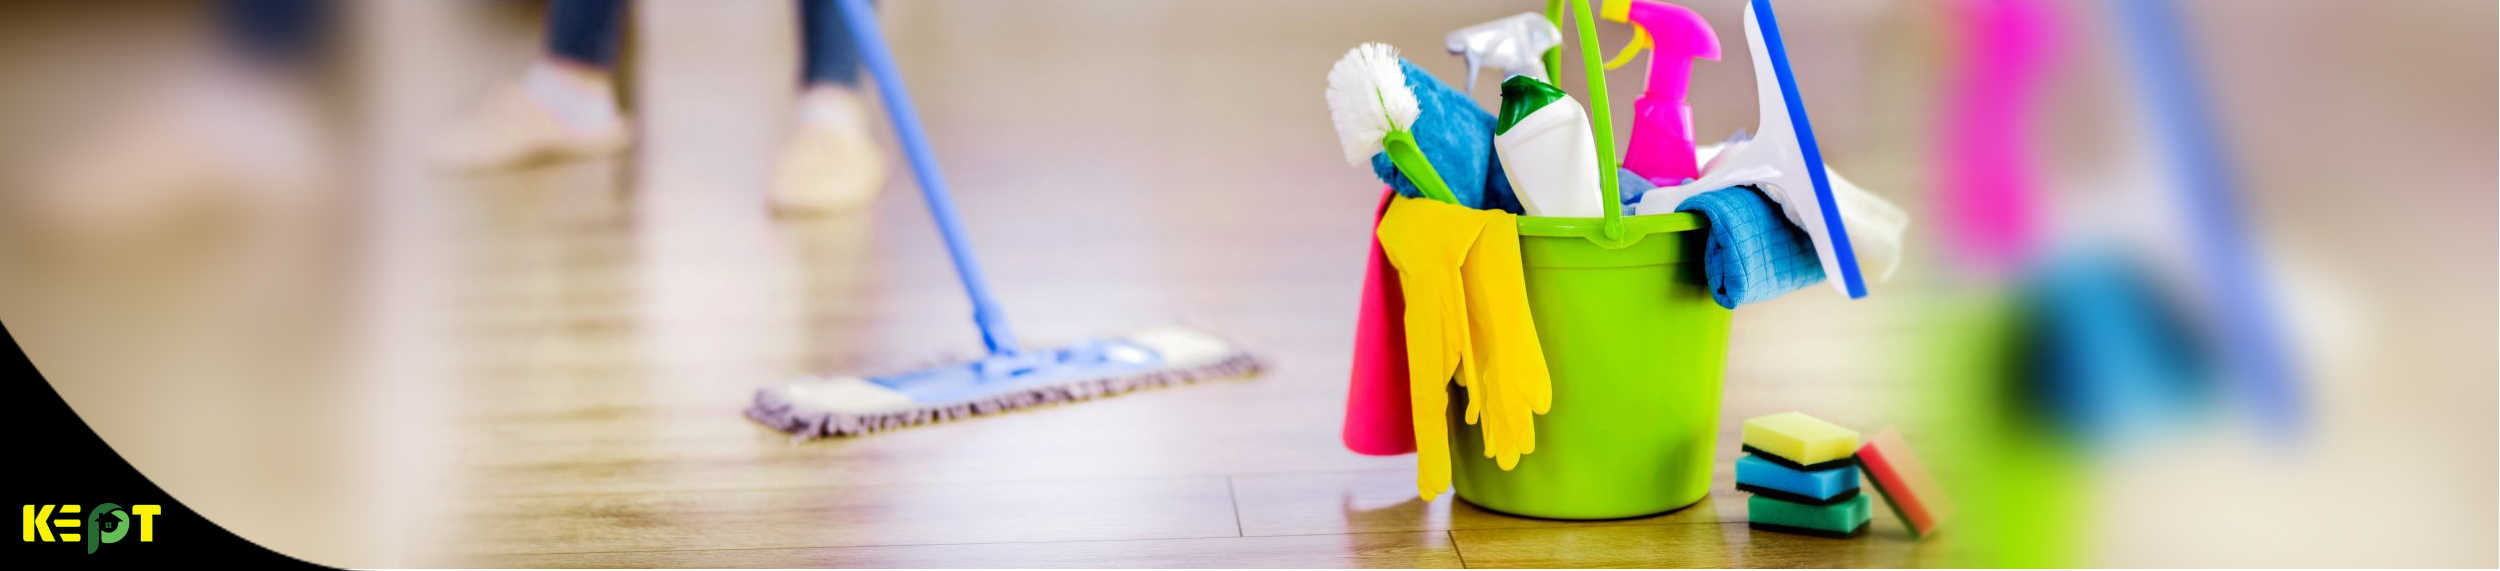 ทริค ทำความสะอาดบ้านให้เหมือนมือโปร ง่ายและถูกต้อง